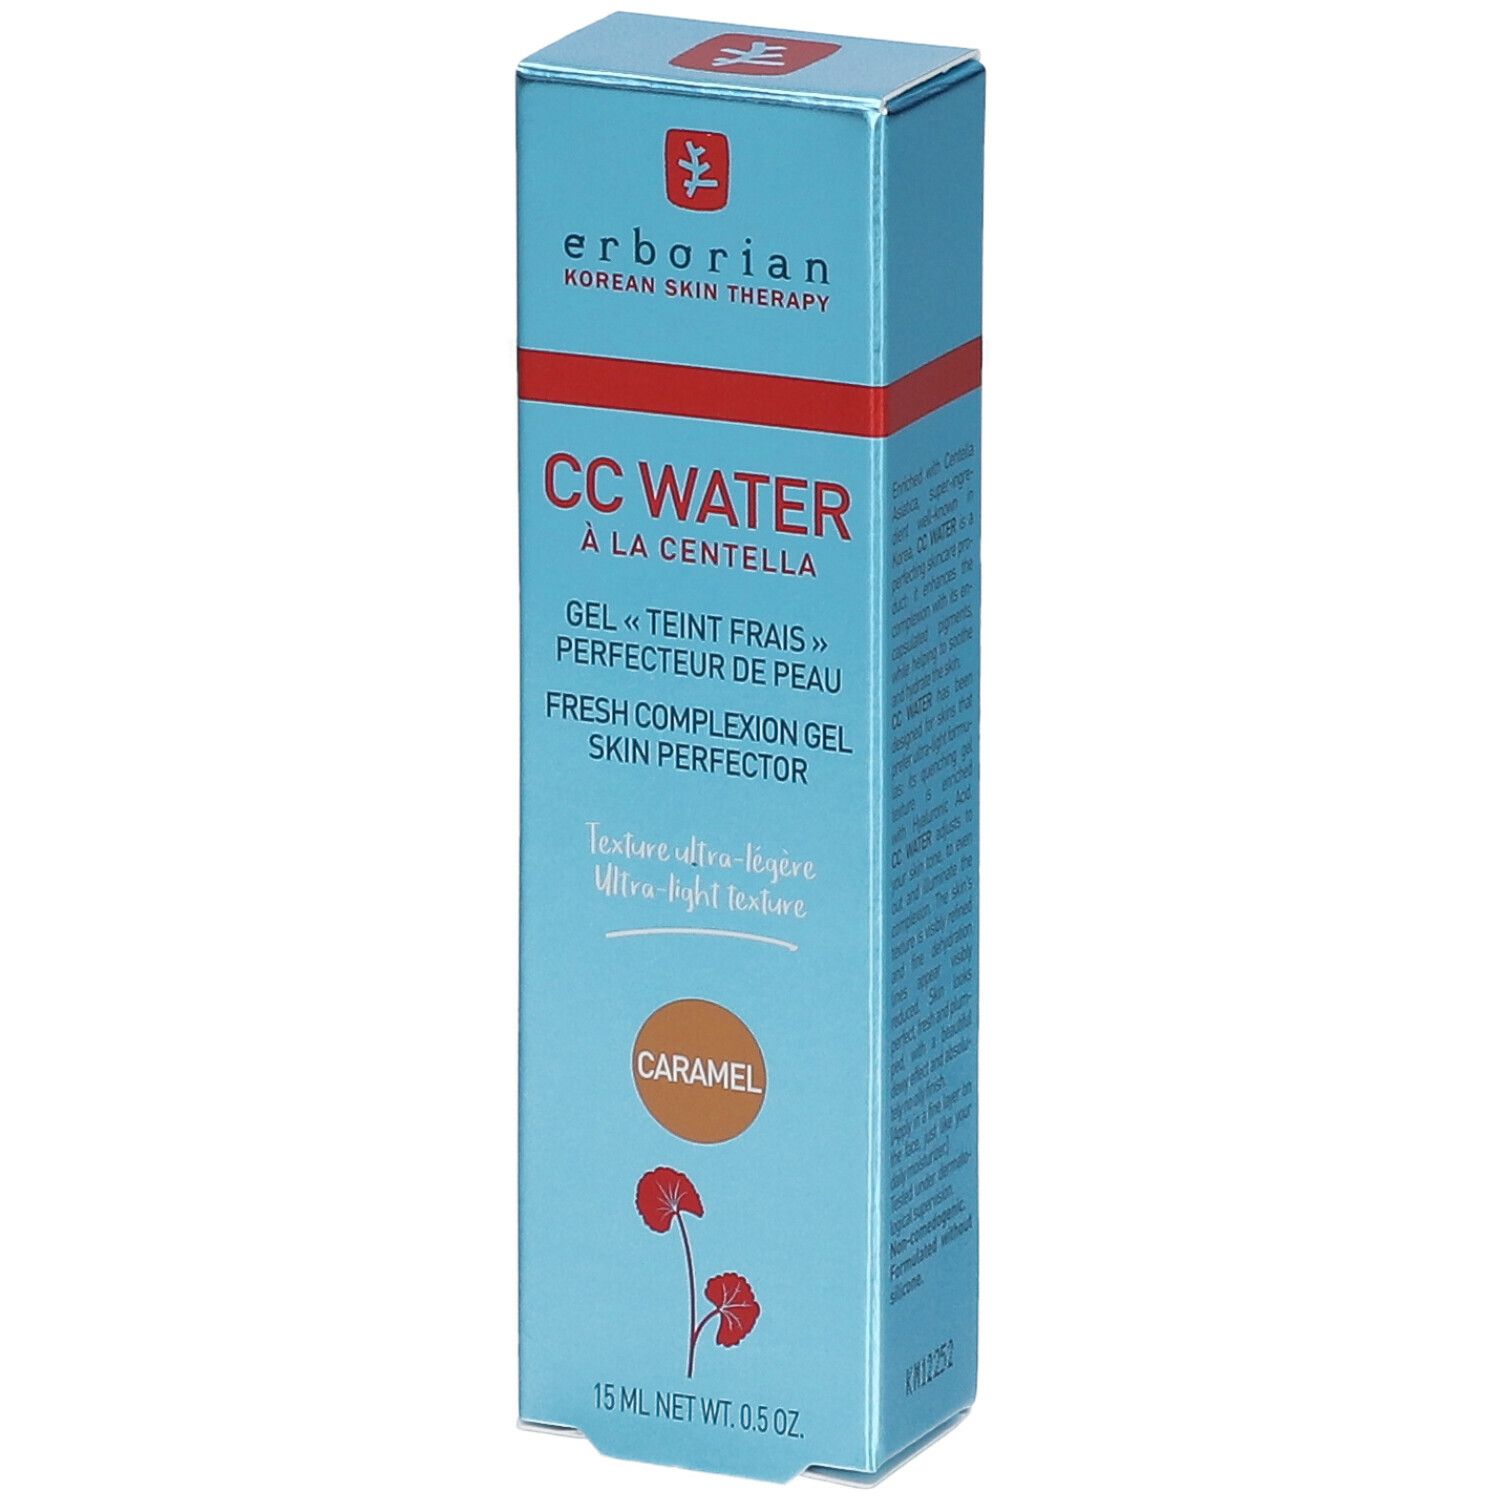 erborian CC Water Caramel